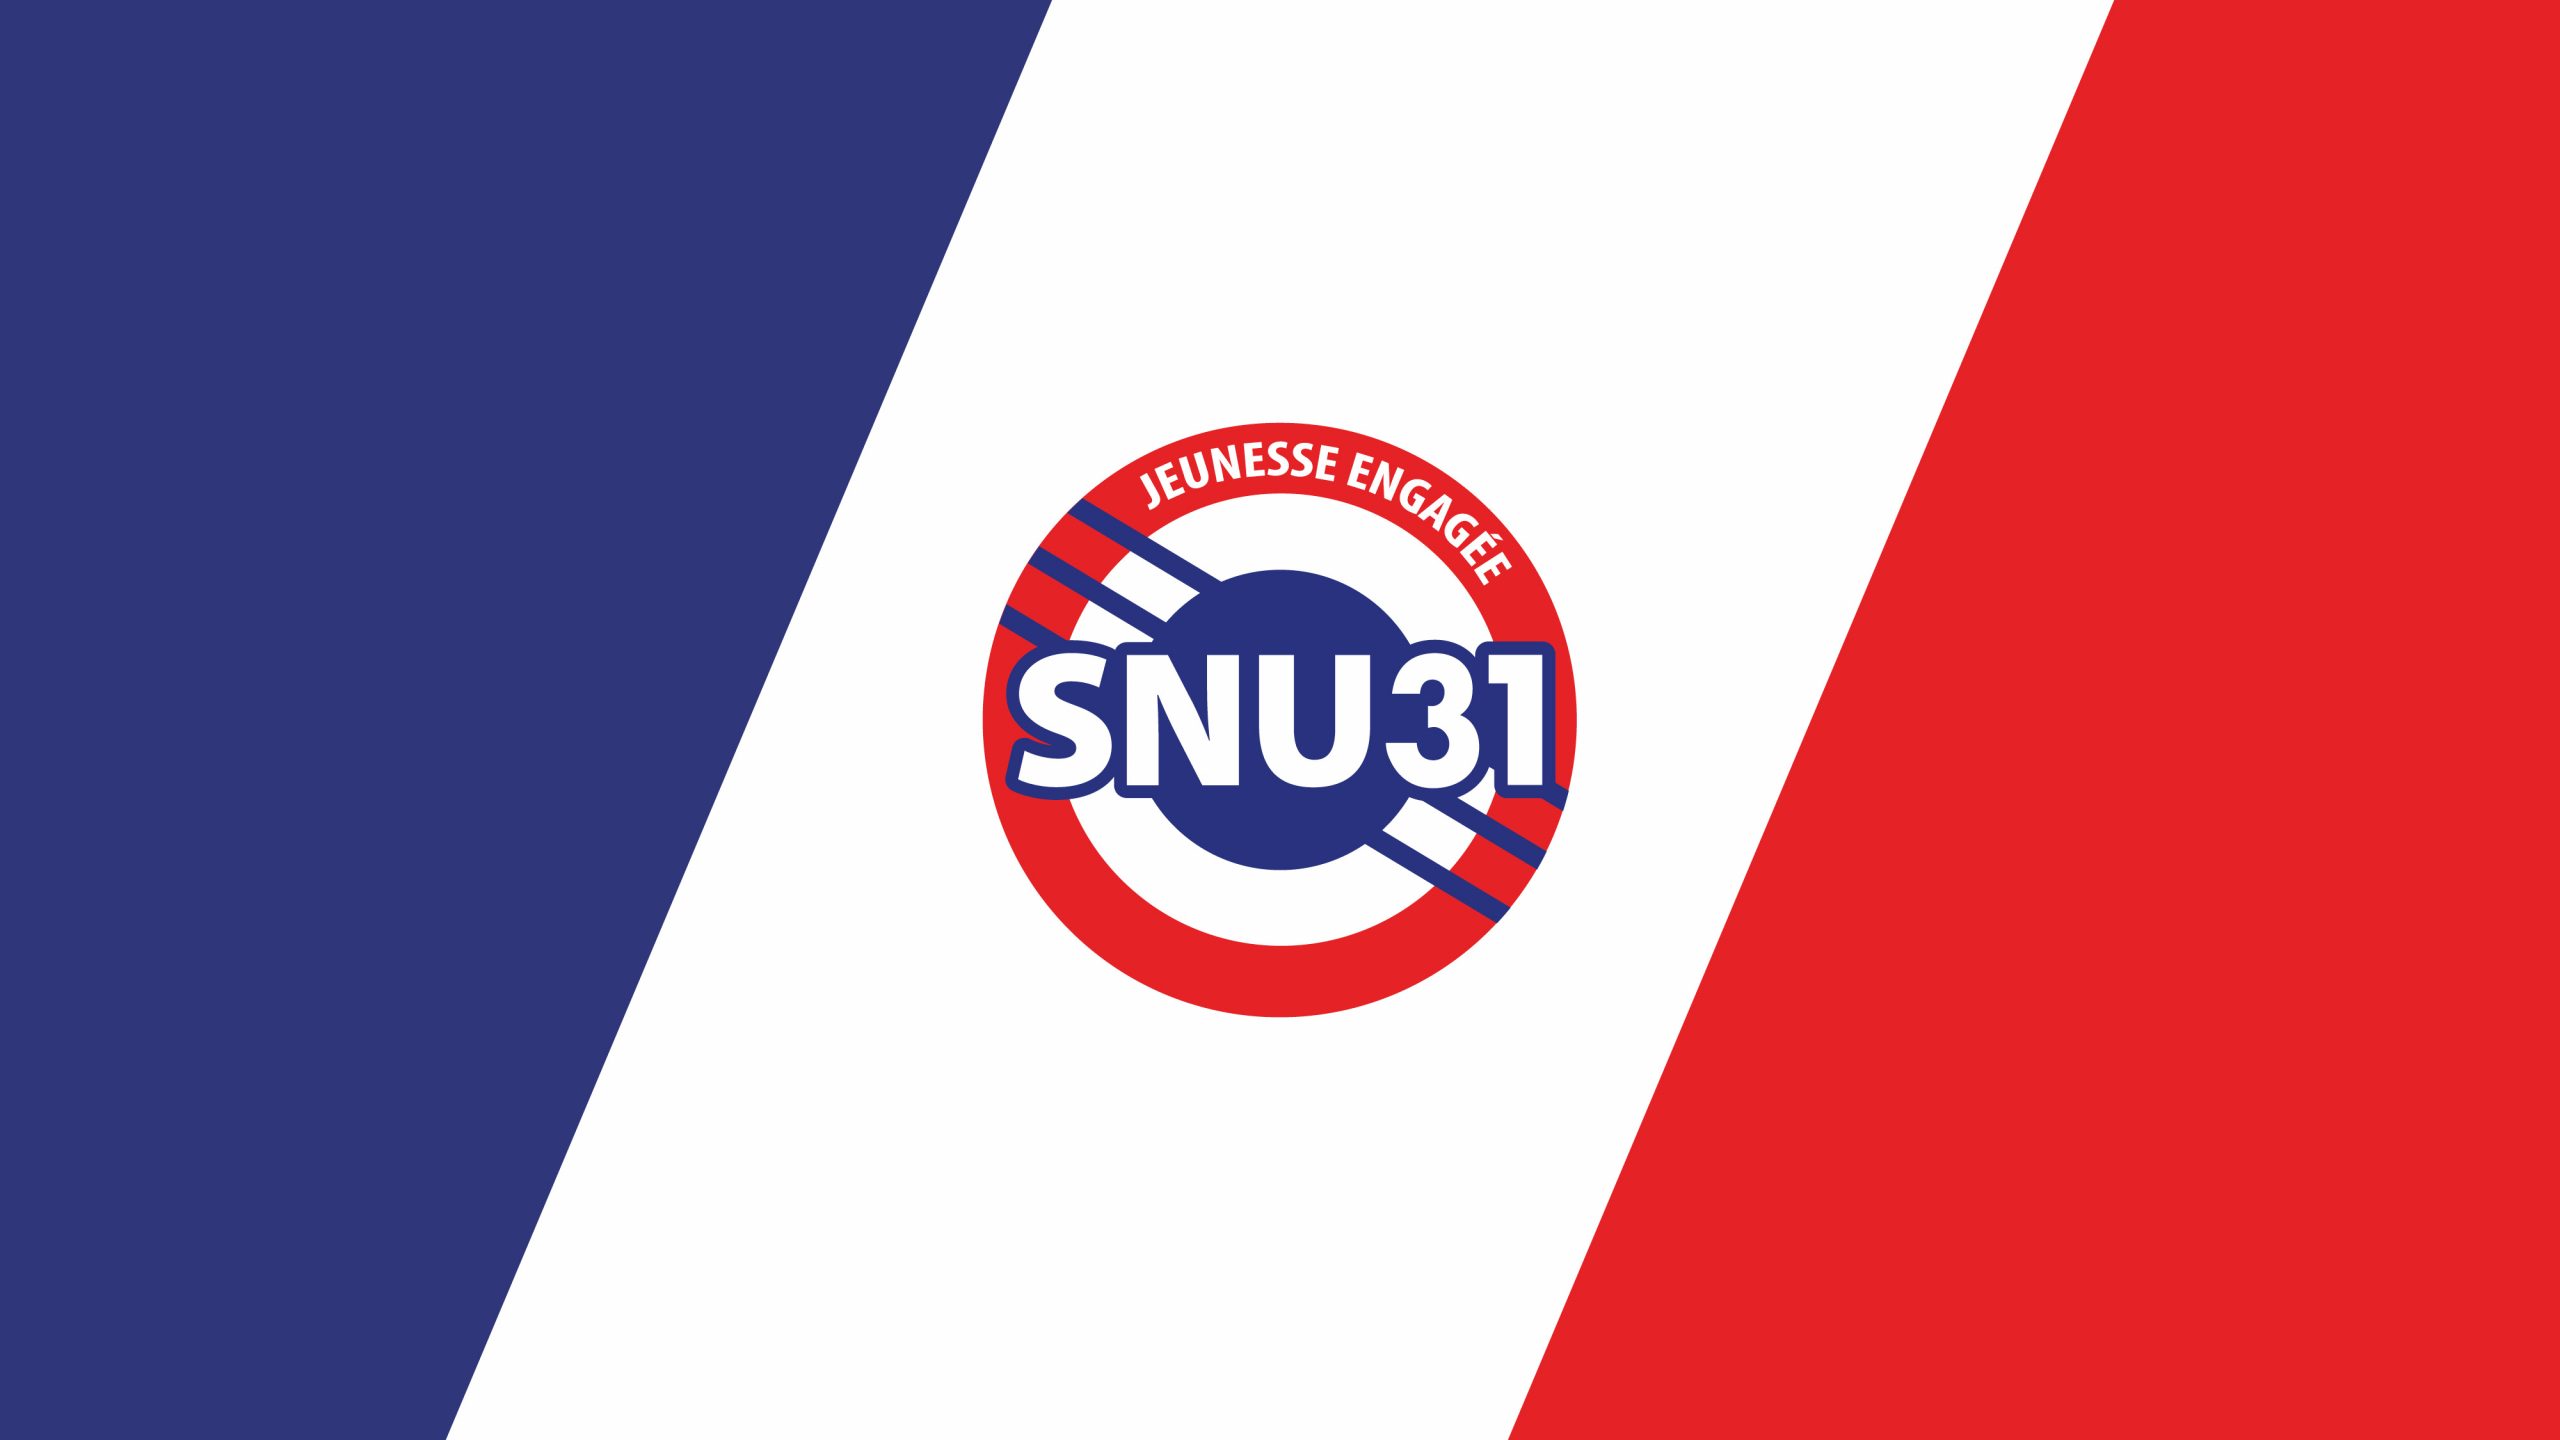 Création d'un logo SNU31 pour Toulouse en respectant la charte graphique et le visuel initial